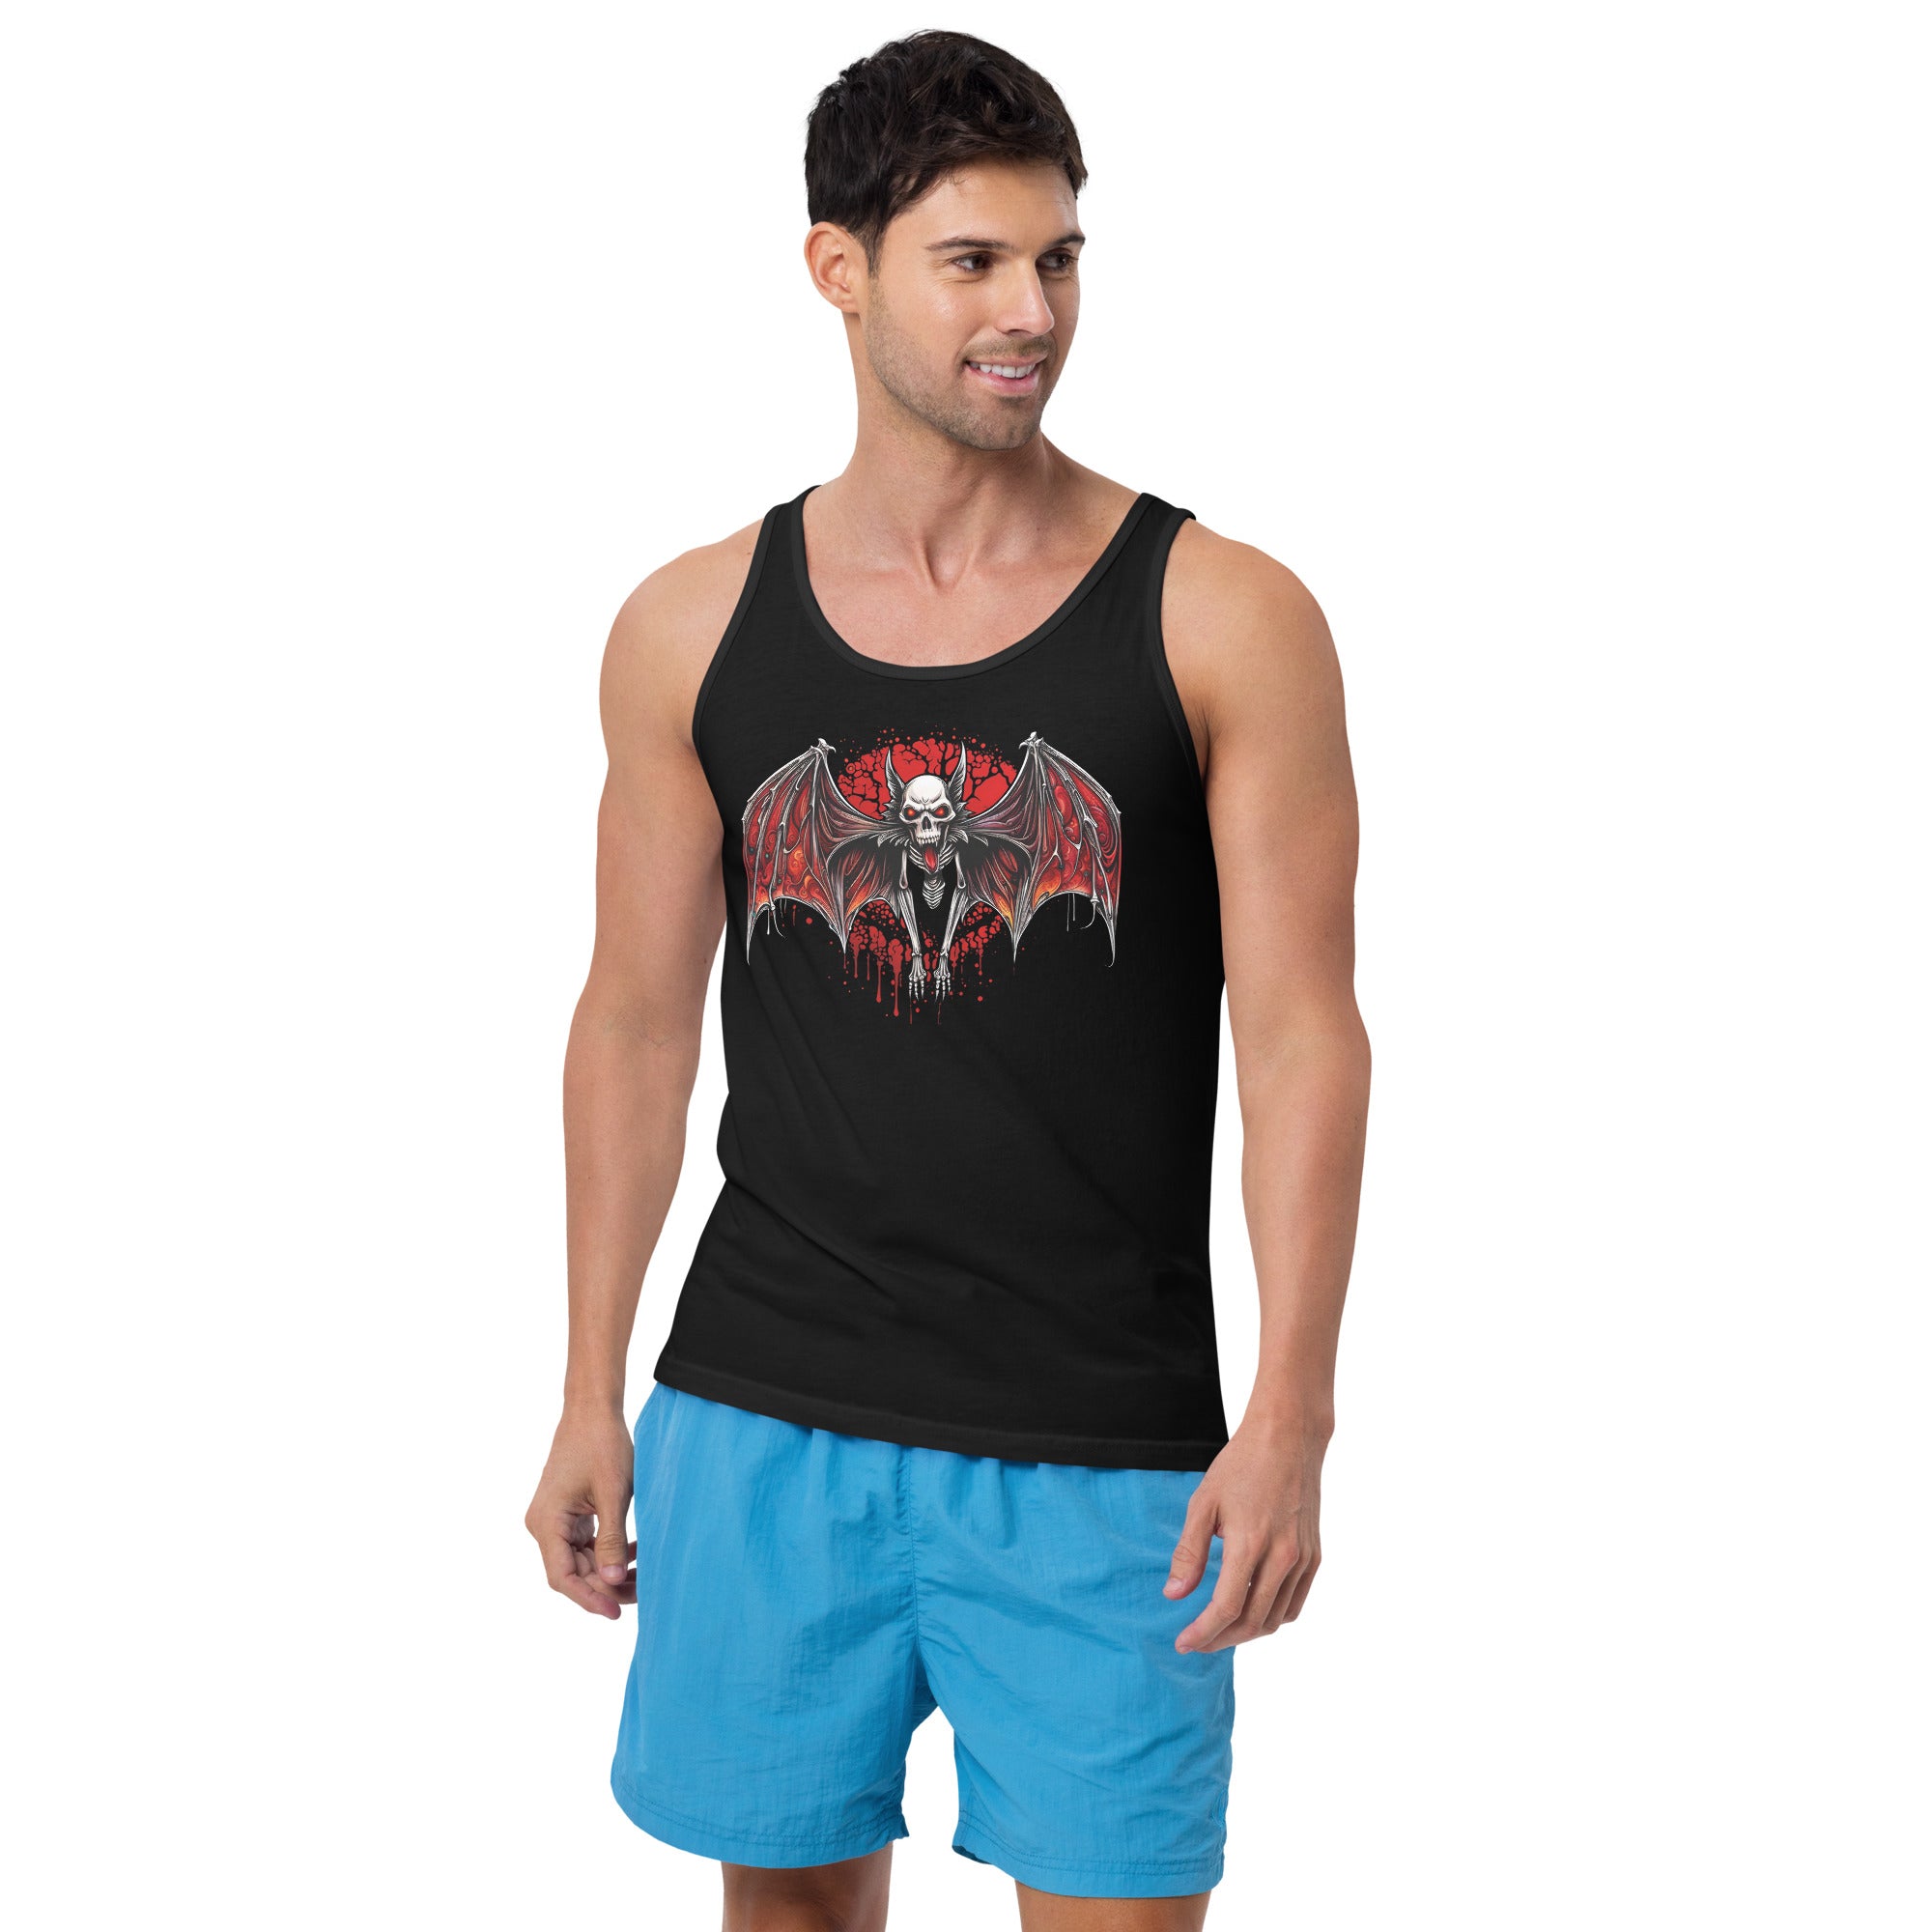 Blood Moon Demon Vampire Bat Halloween Men's Tank Top Shirt